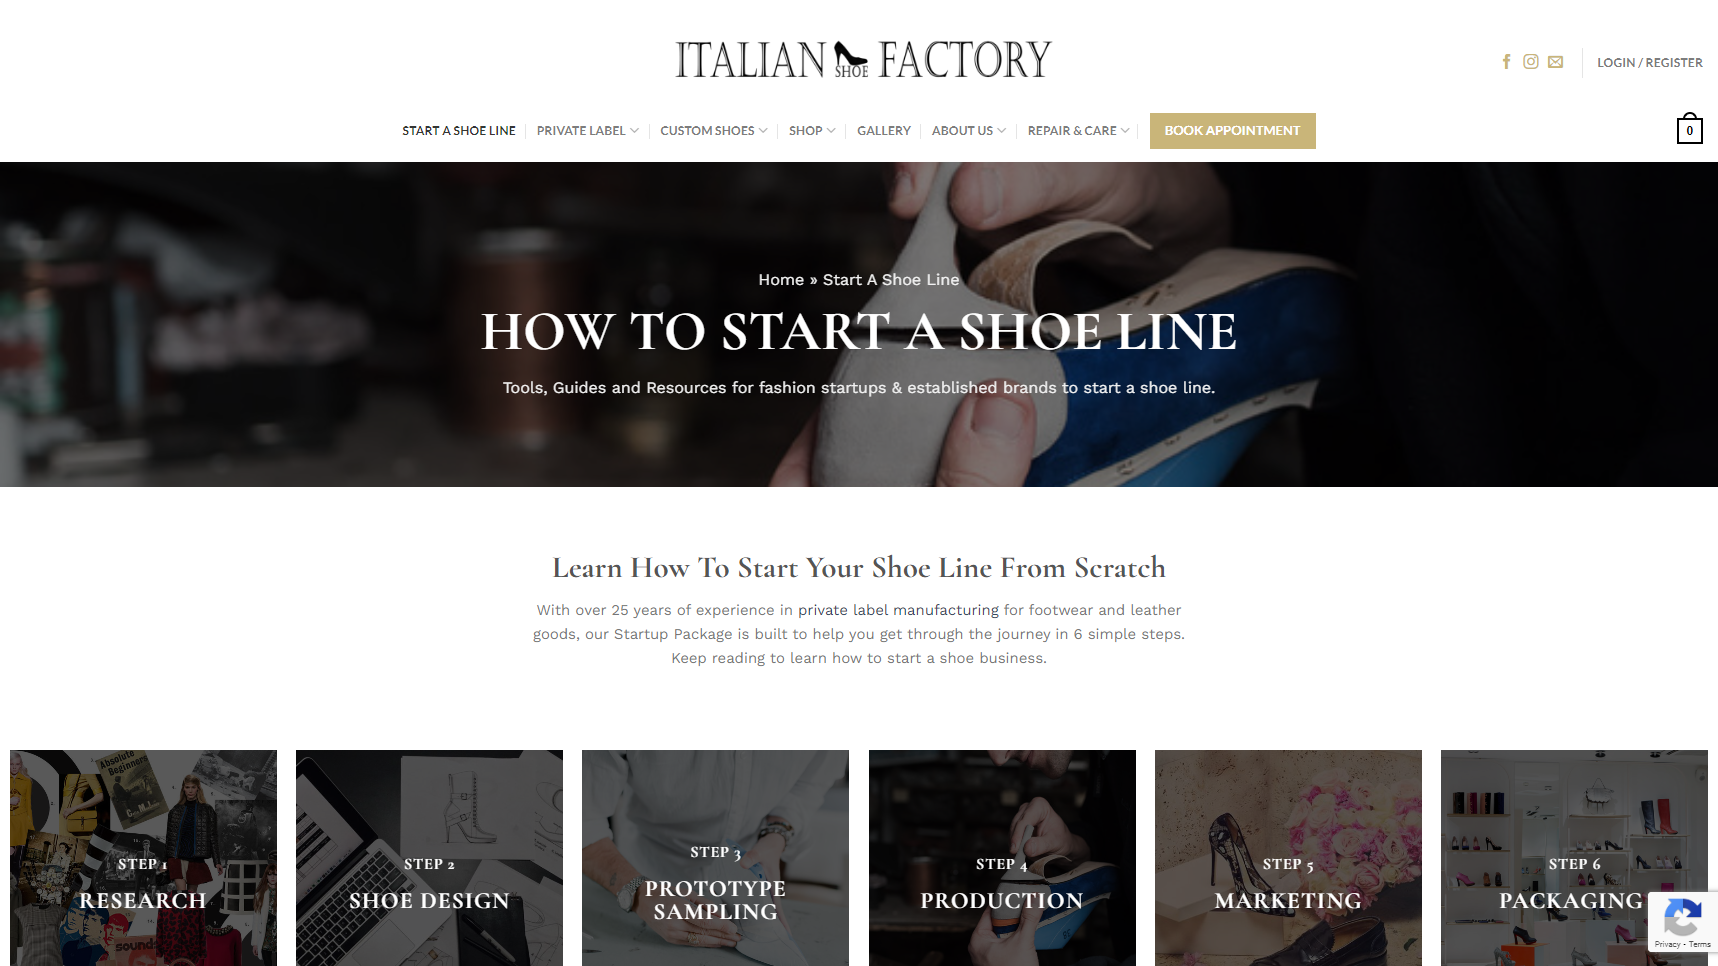 Italian Shoe Factory - Footwear Manufacturer